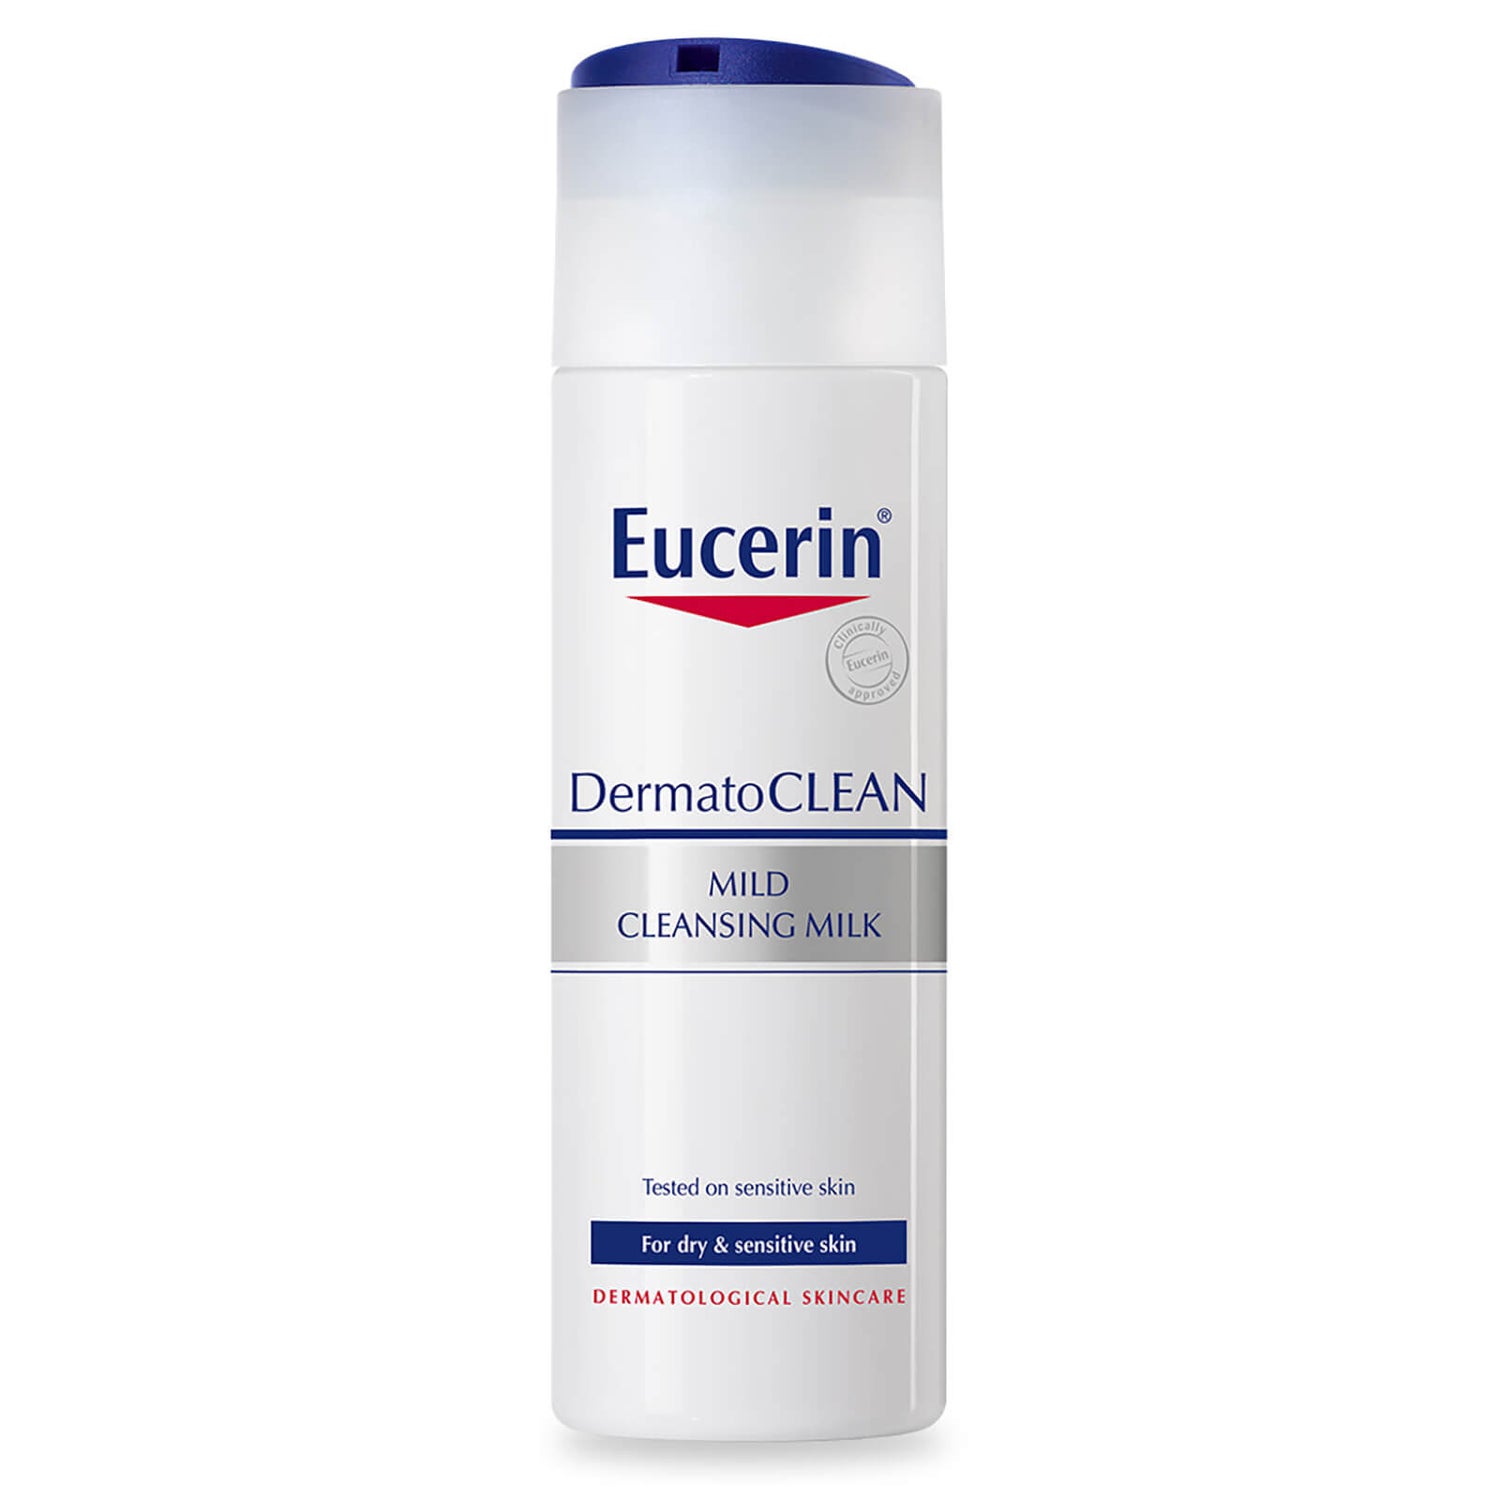 Eucerin® DermatoCLEAN lait nettoyant doux (200ml)